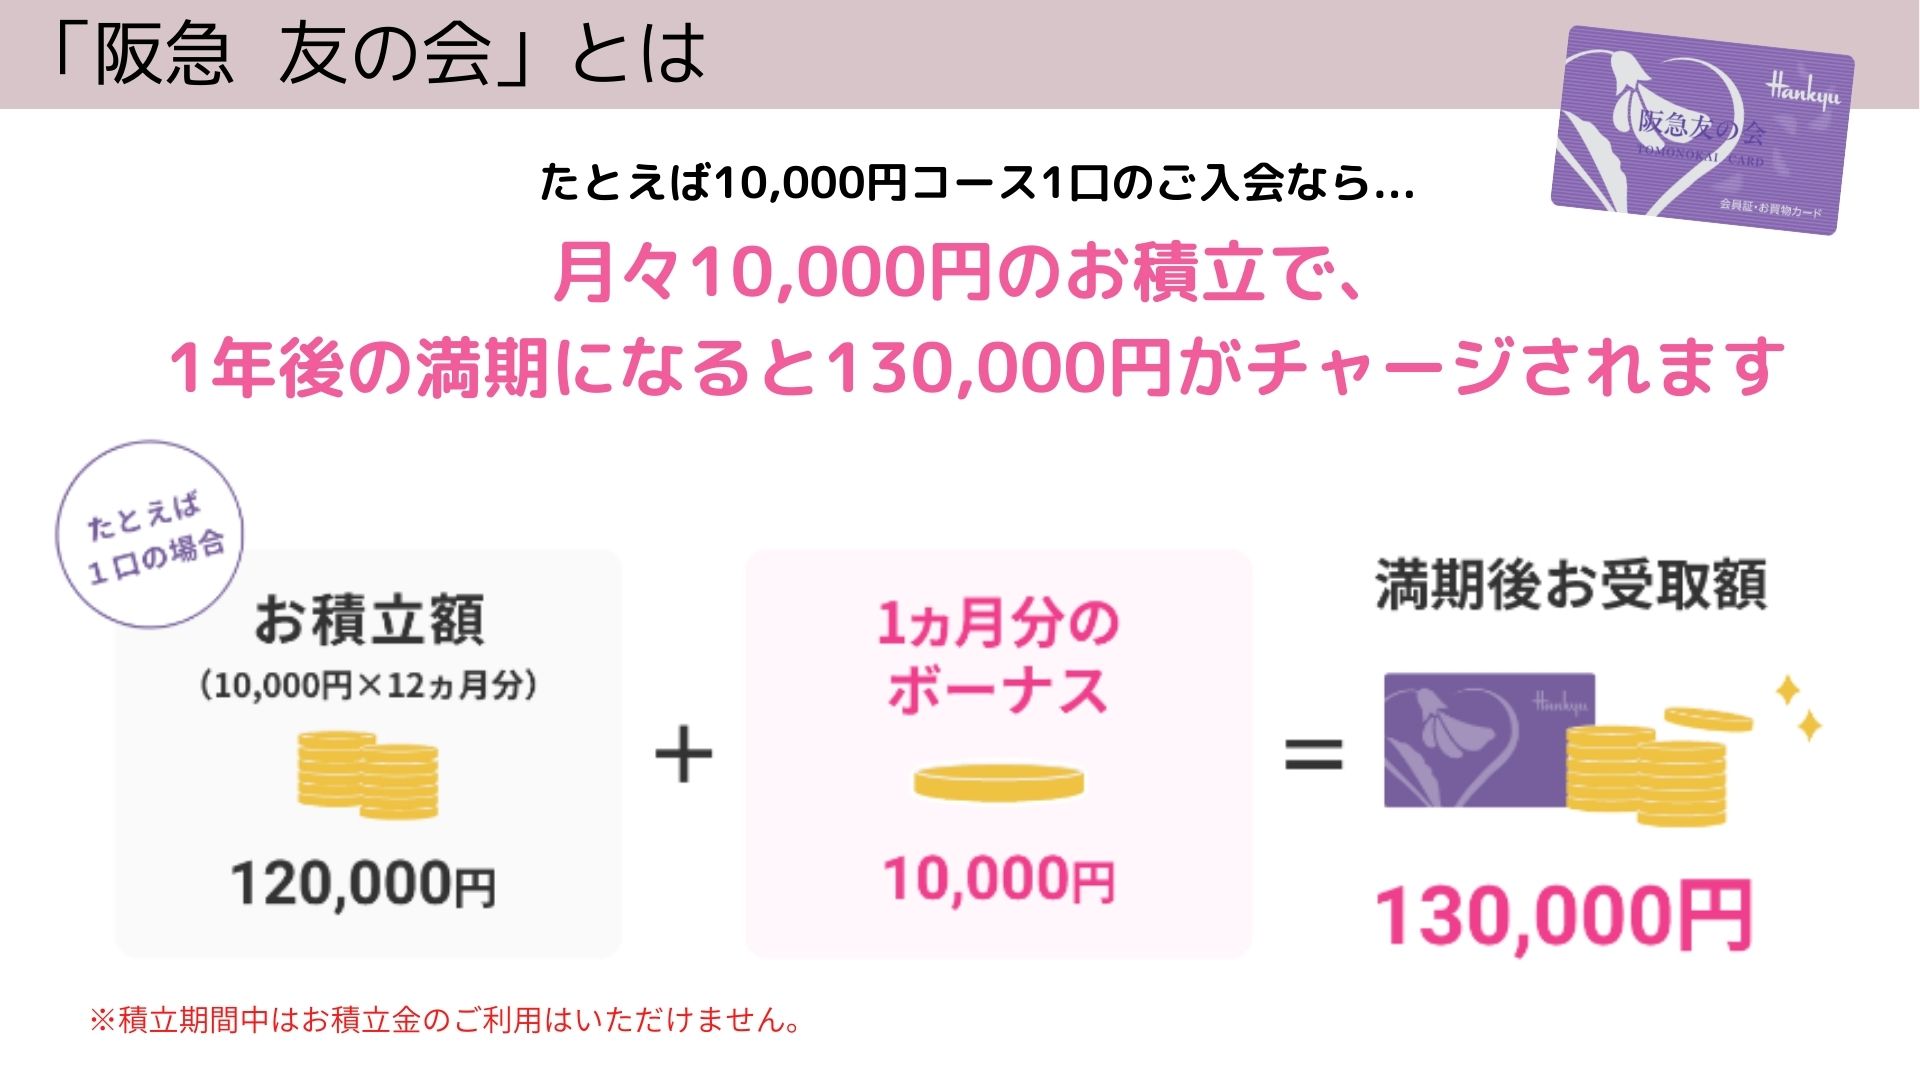 チケット阪急友の会5万円分 17-5